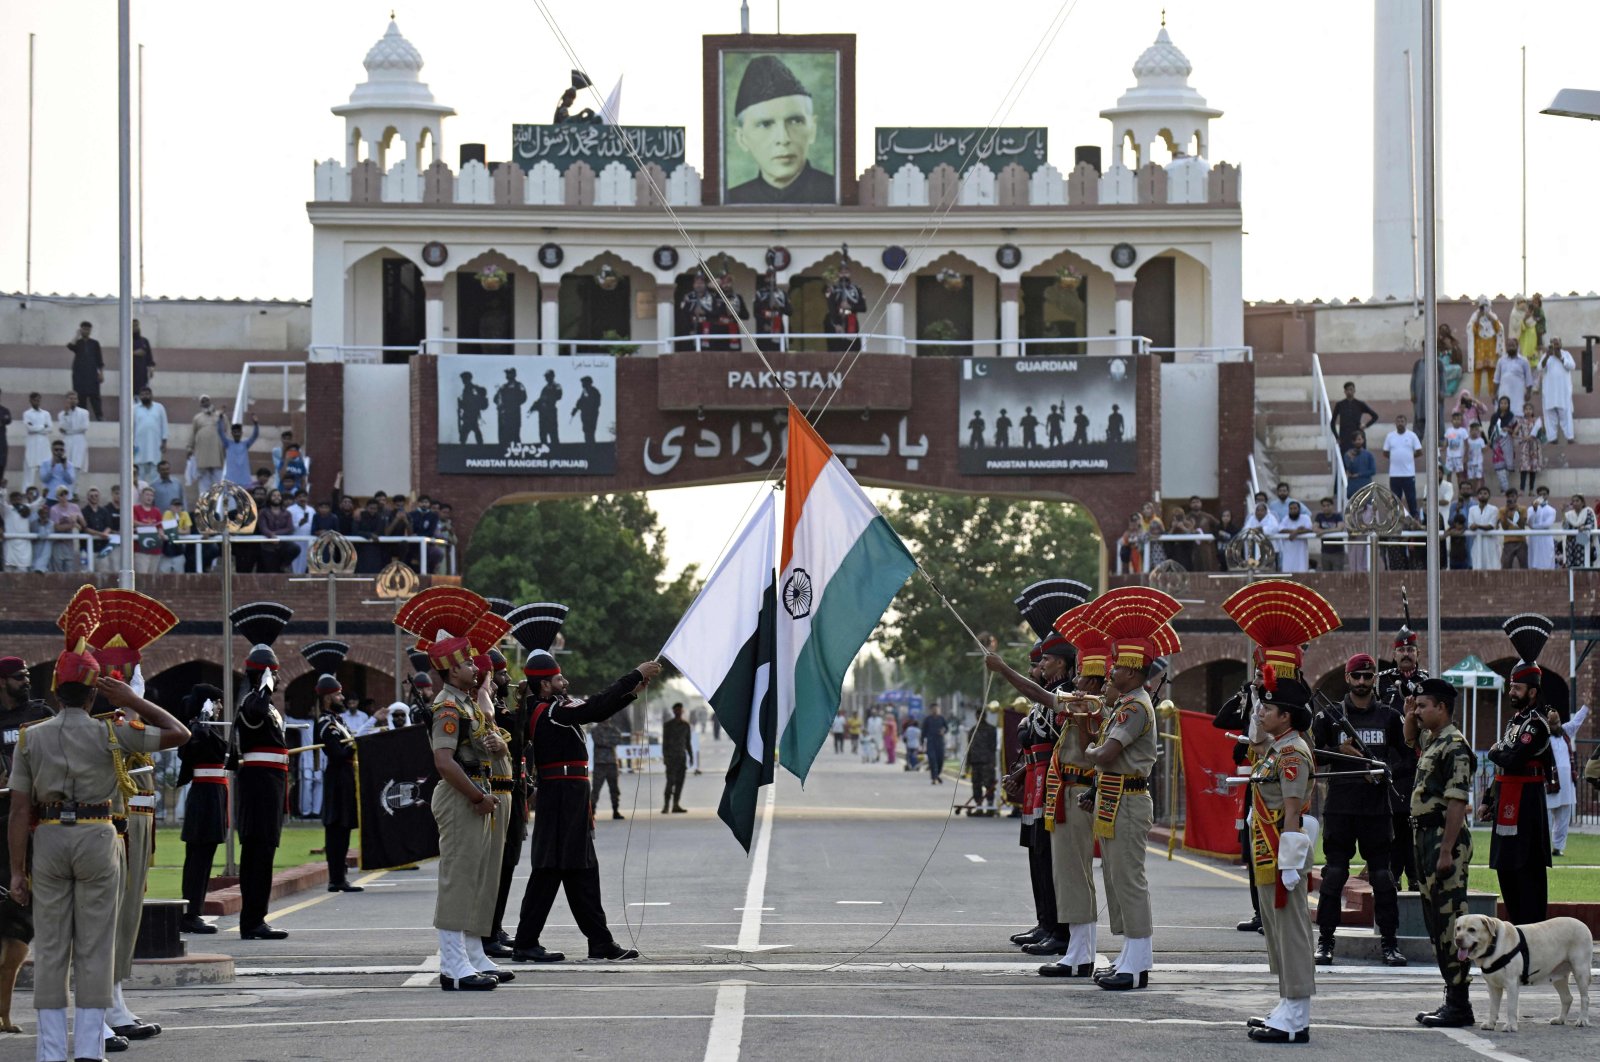 Perdagangan dapat membuka ikatan India-Pakistan 75 tahun setelah kemerdekaan